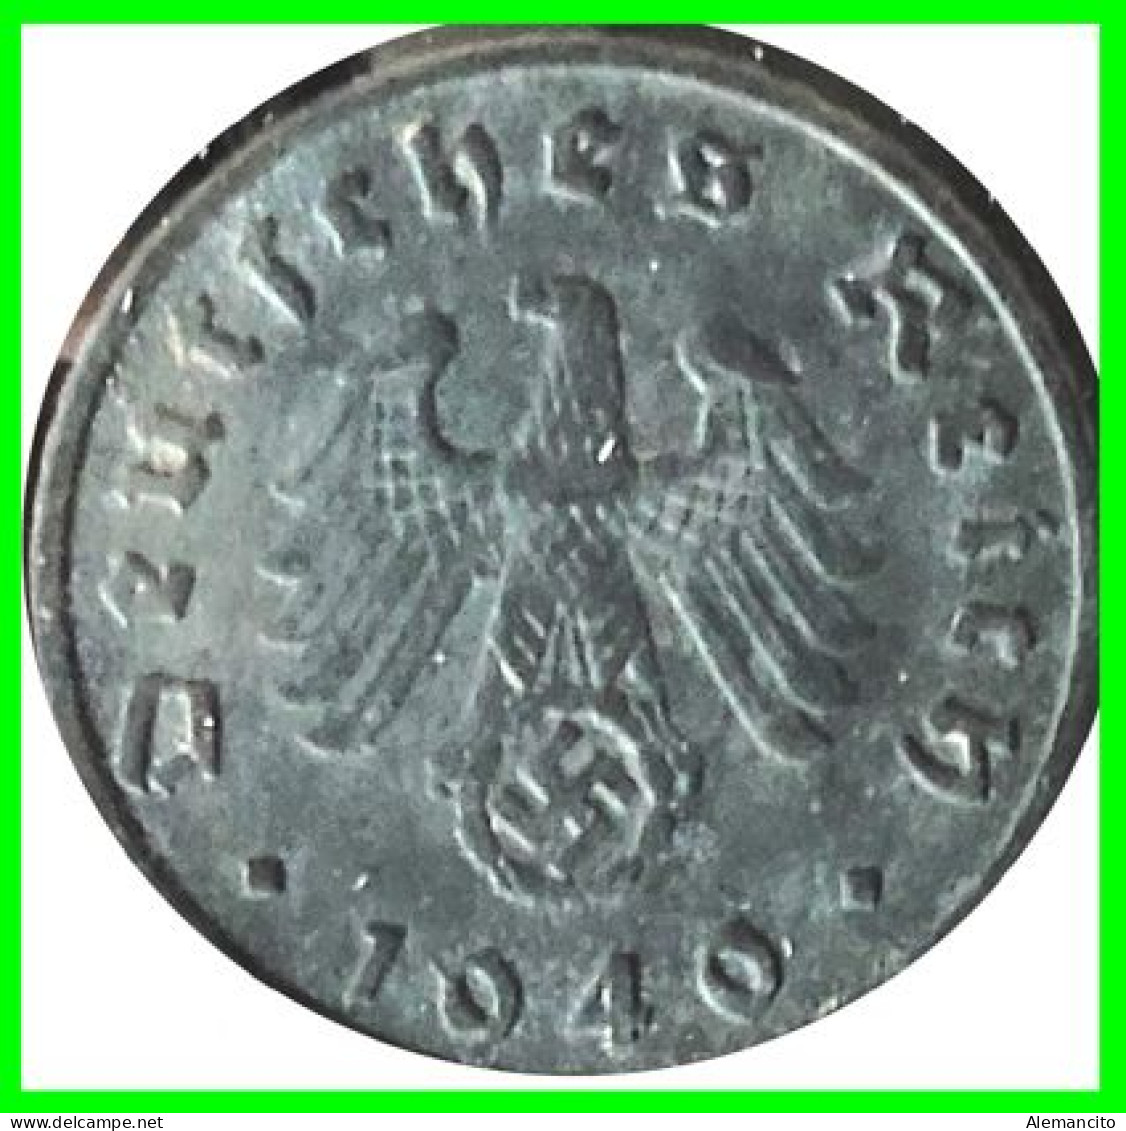 ALEMANIA - GERMANY SERIE DE 7 MONEDAS DE 5 REICHSPFNNIG TERCER REICHS ( AÑO 1940 CECAS - A - B -D - E - F - G - J ) - 5 Reichspfennig